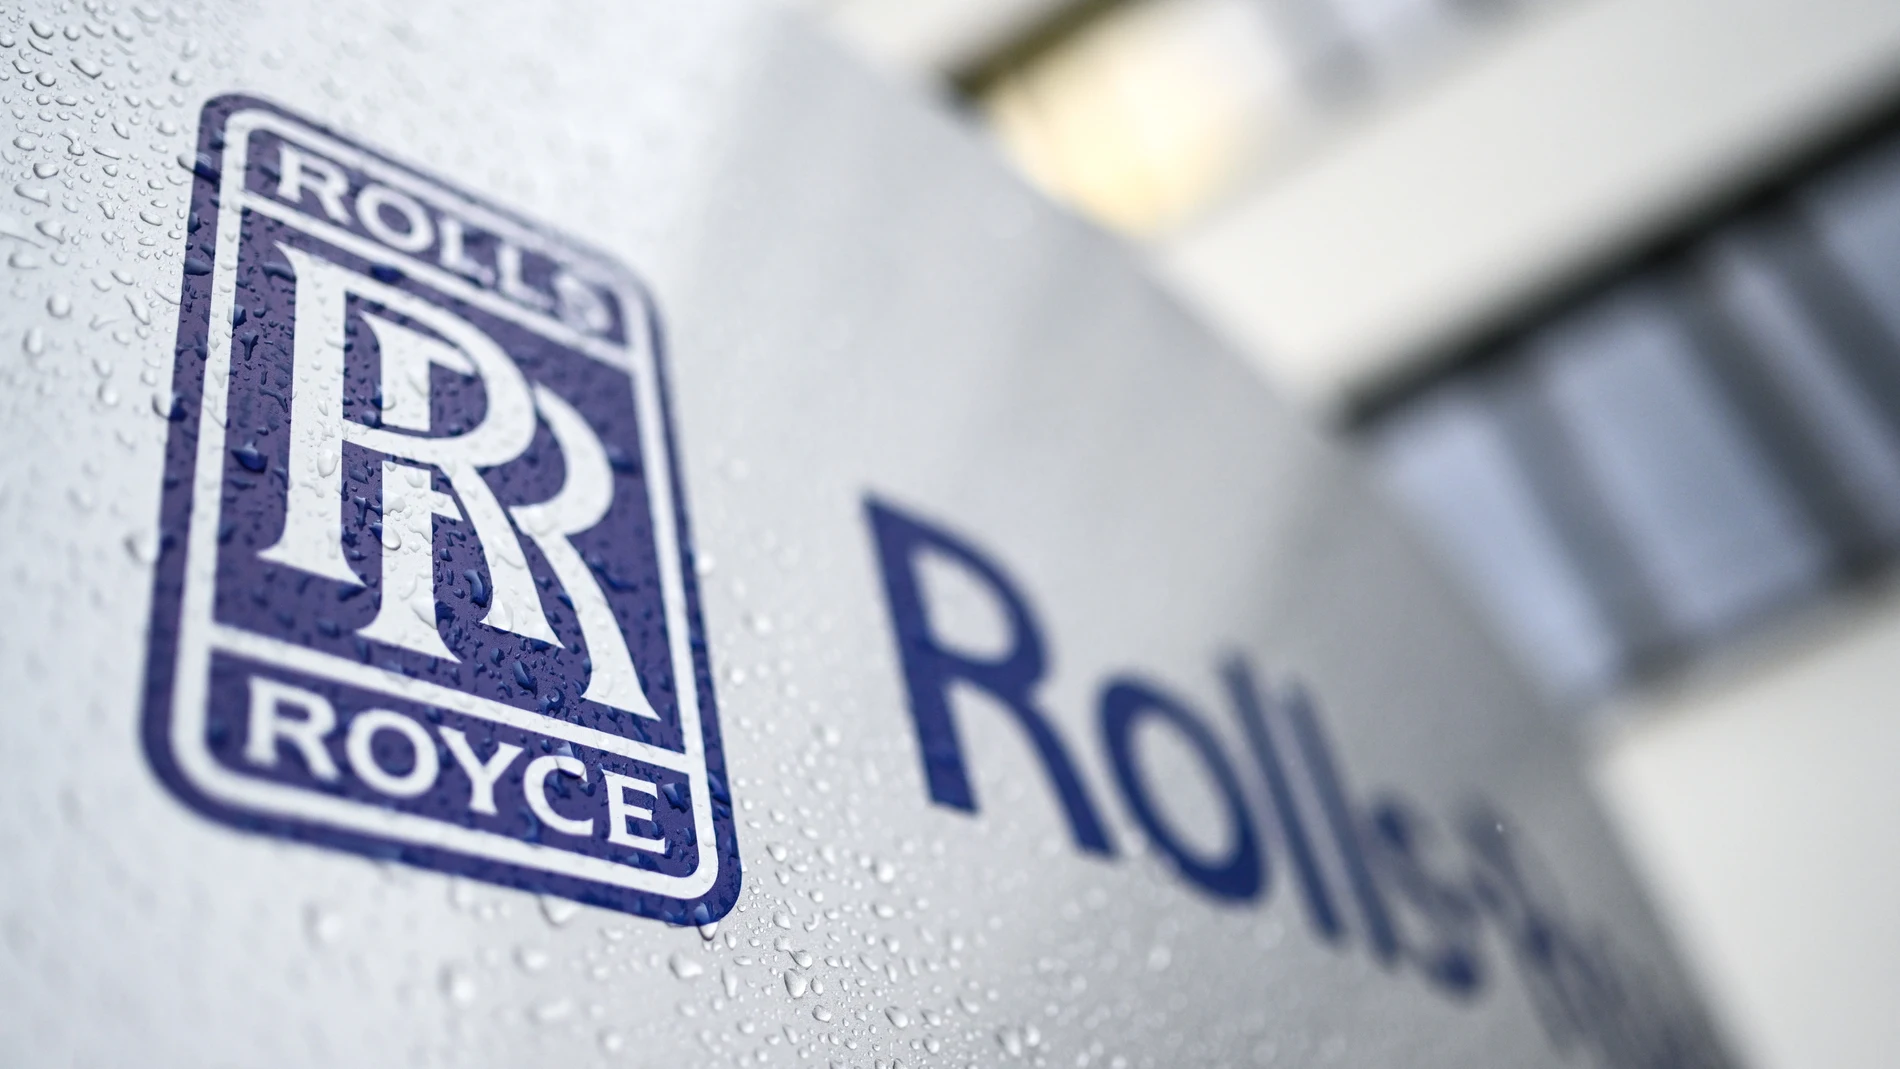 Economía/Motor.- Rolls-Royce ficha de BP a Helen McCabe y la nombra nueva directora financiera del grupo